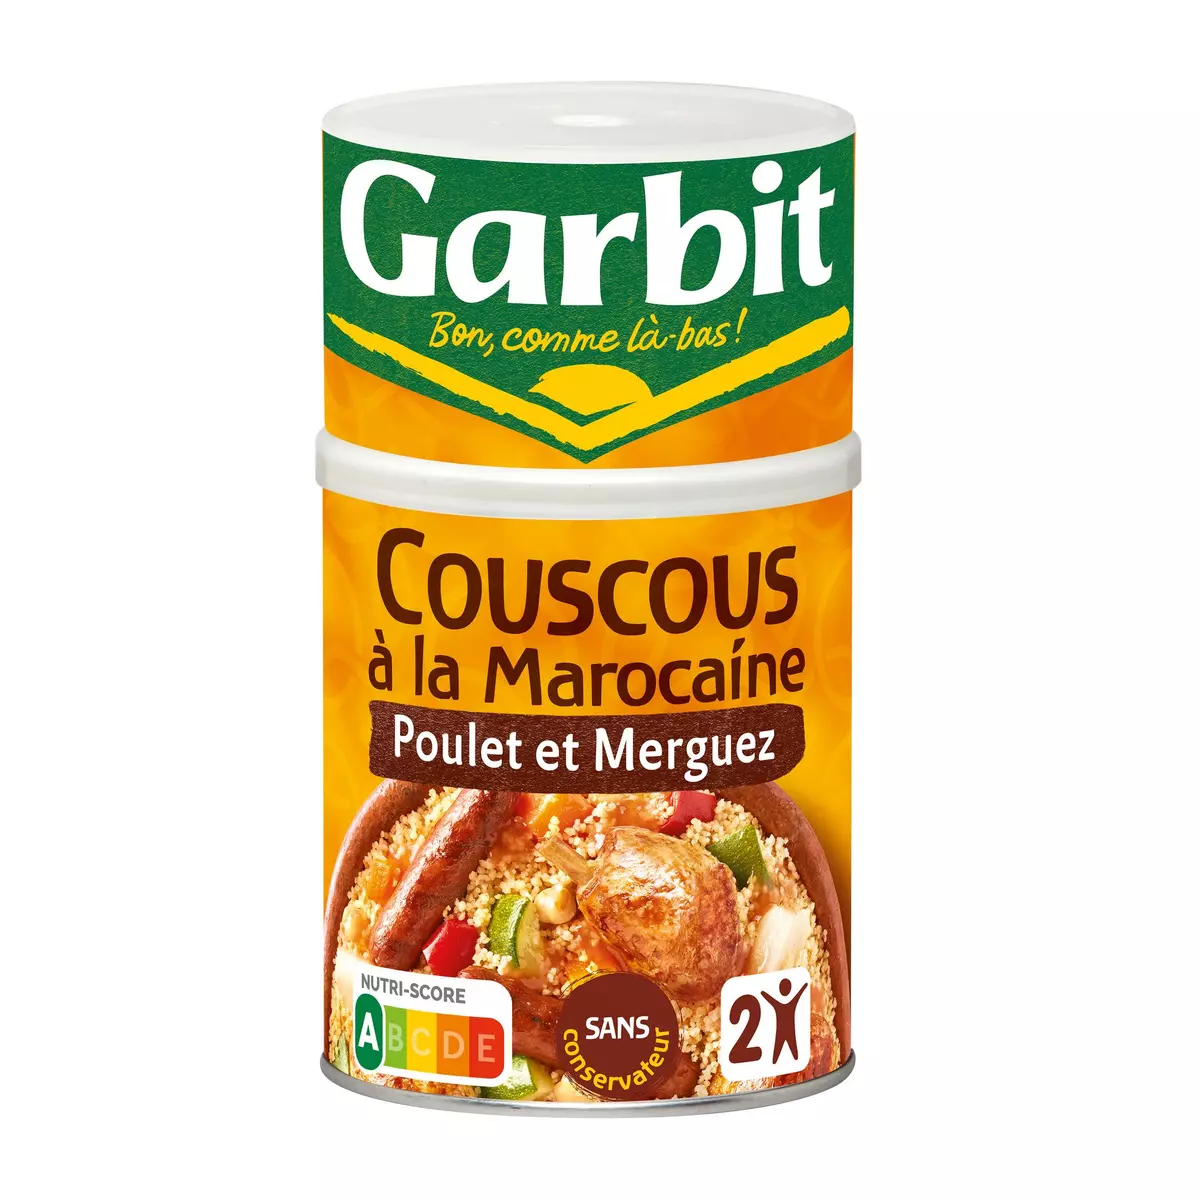 GARBIT Couscous royal poulet et bœuf express 6 min 980g